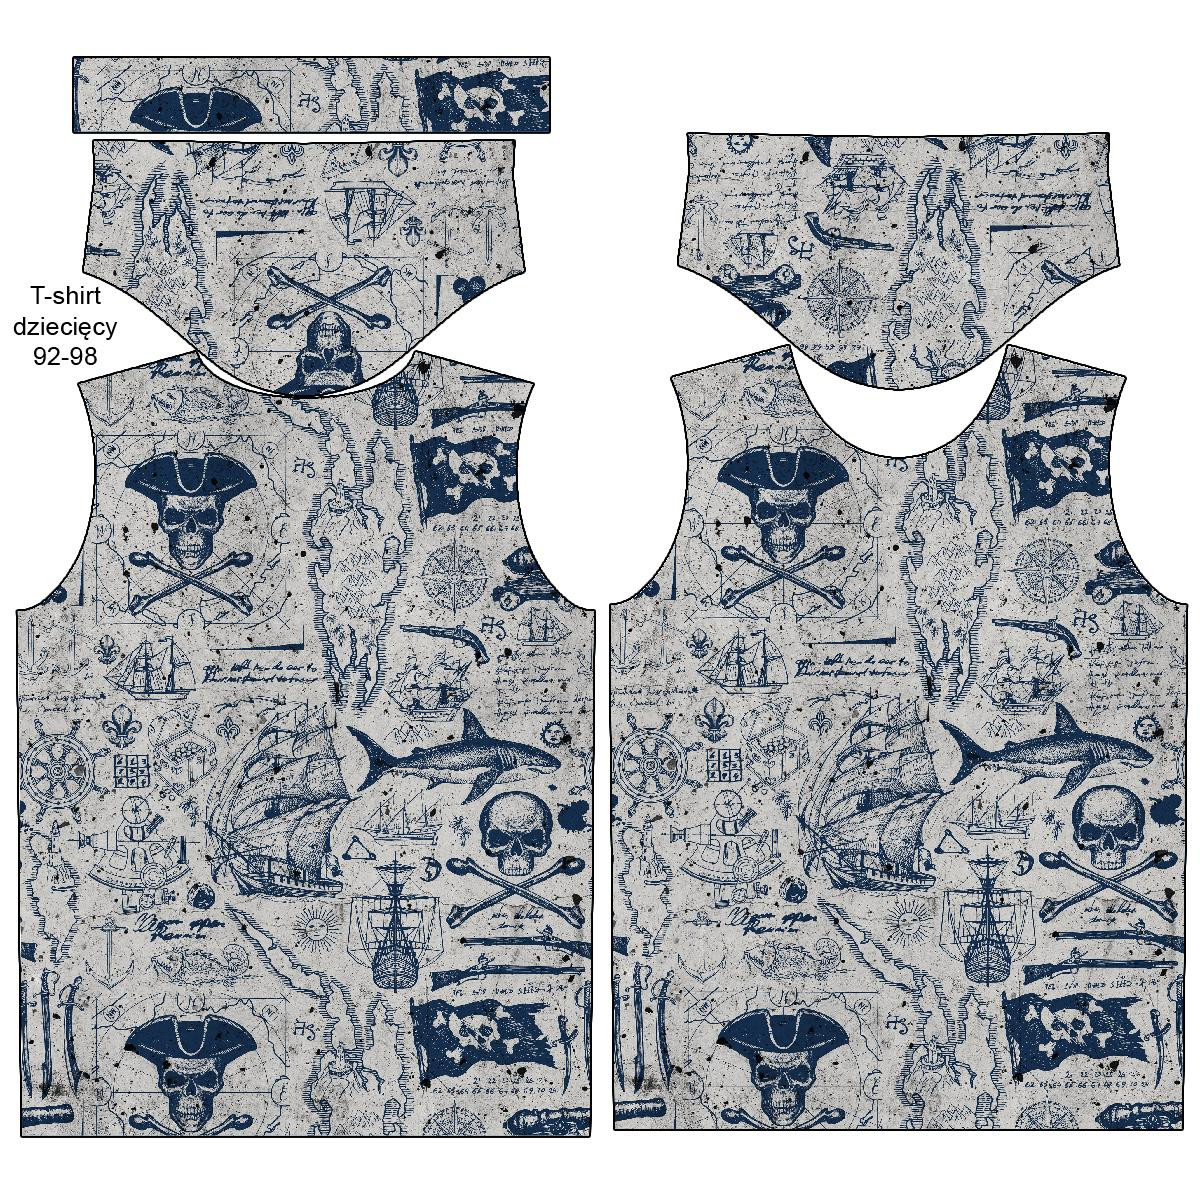 T-SHIRT DZIECIĘCY - PIRACKA PRZYGODA / beton - single jersey